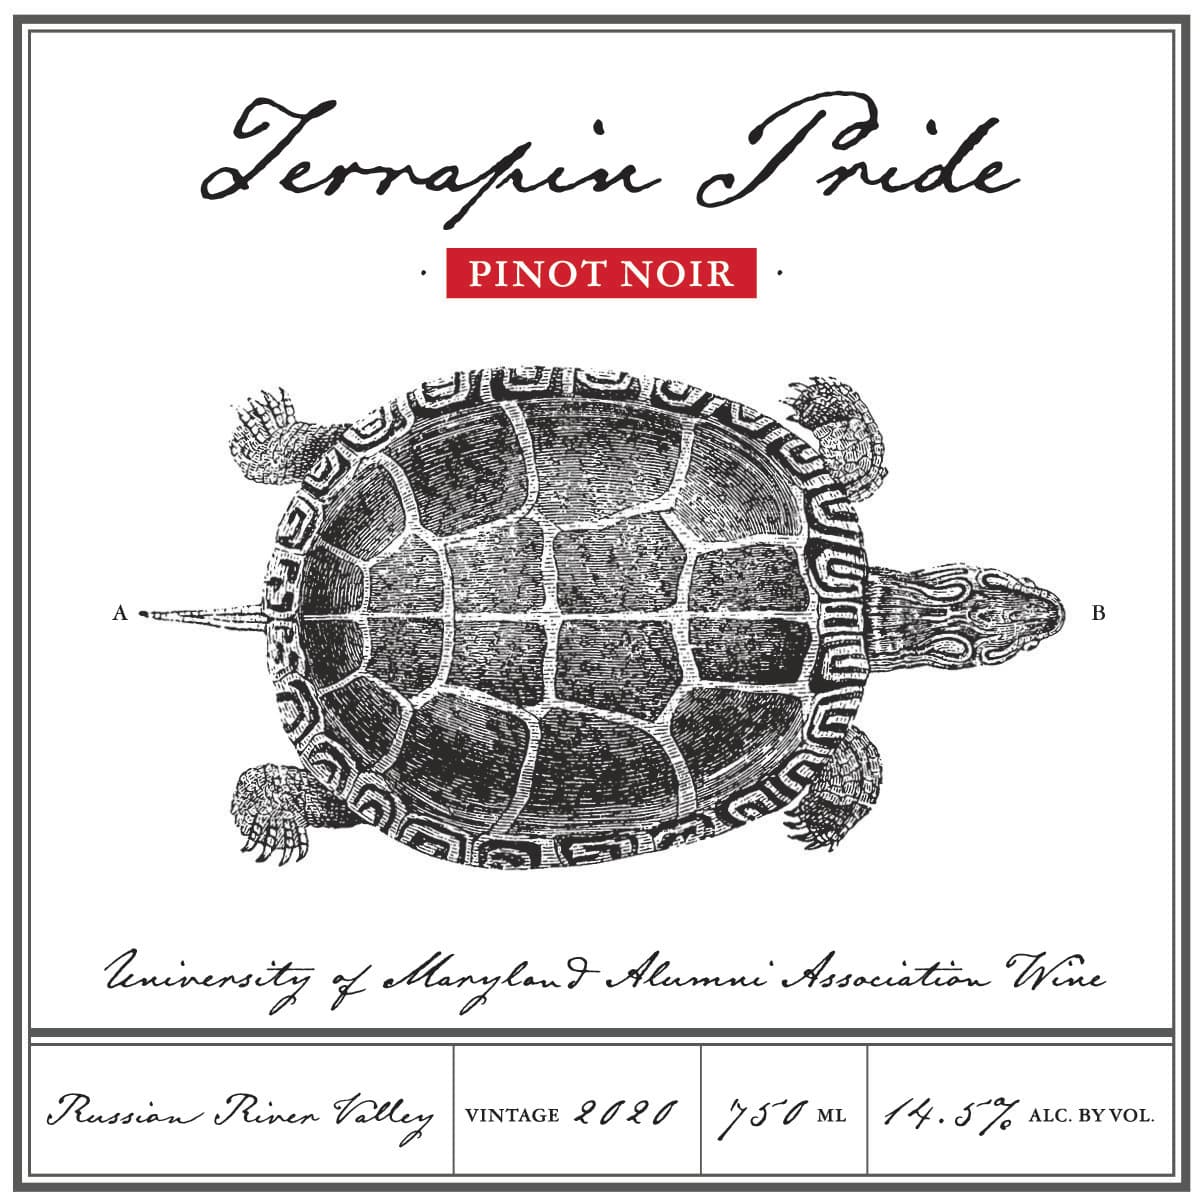 Terrapin Pride Wine Pinot Noir front label